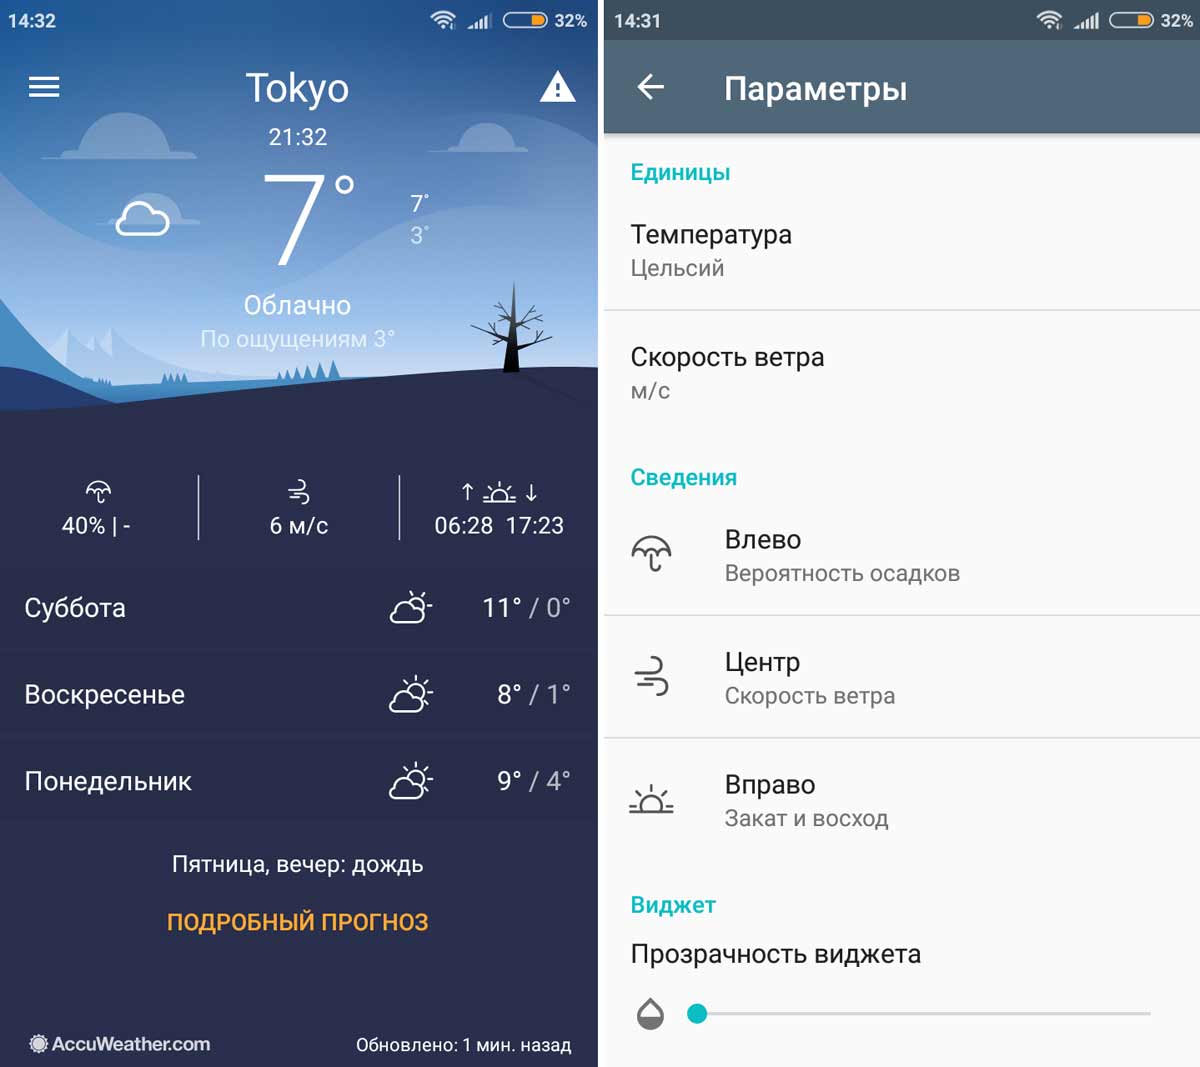 Виджет погоды и часы, как у Nokia 8: где скачать и как установить на Android-смартфон - #Android